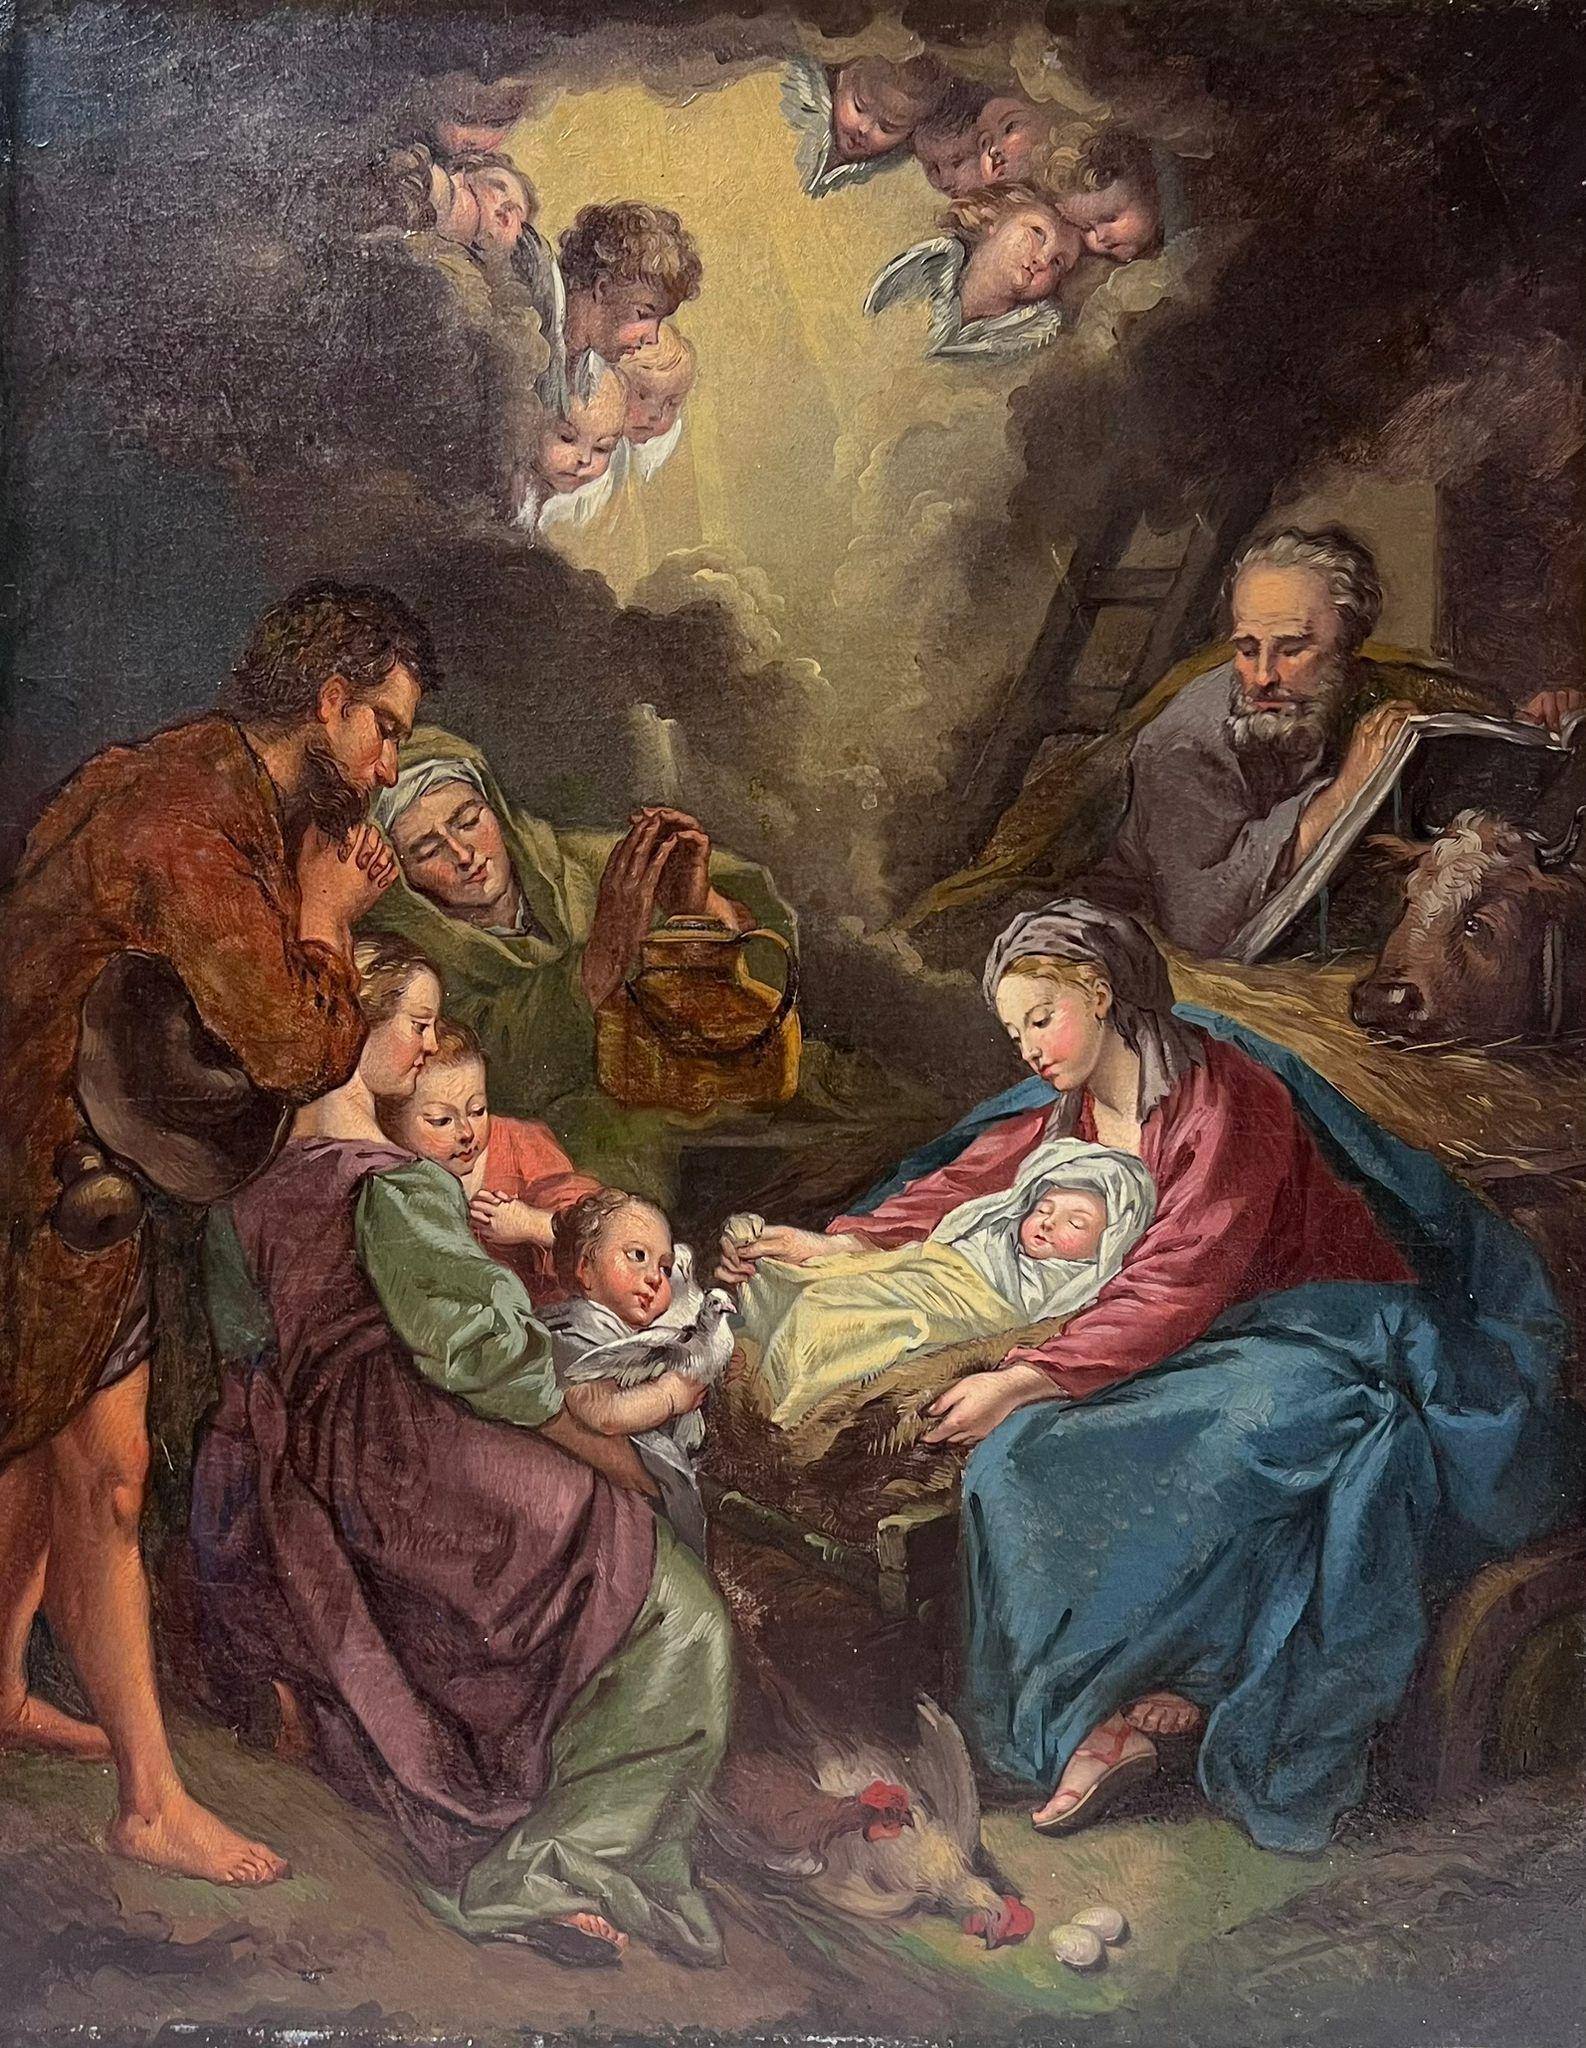 Figurative Painting French 18th Century - Belle peinture à l'huile rococo française des années 1700 représentant la scène de la nativité de Bethlehem